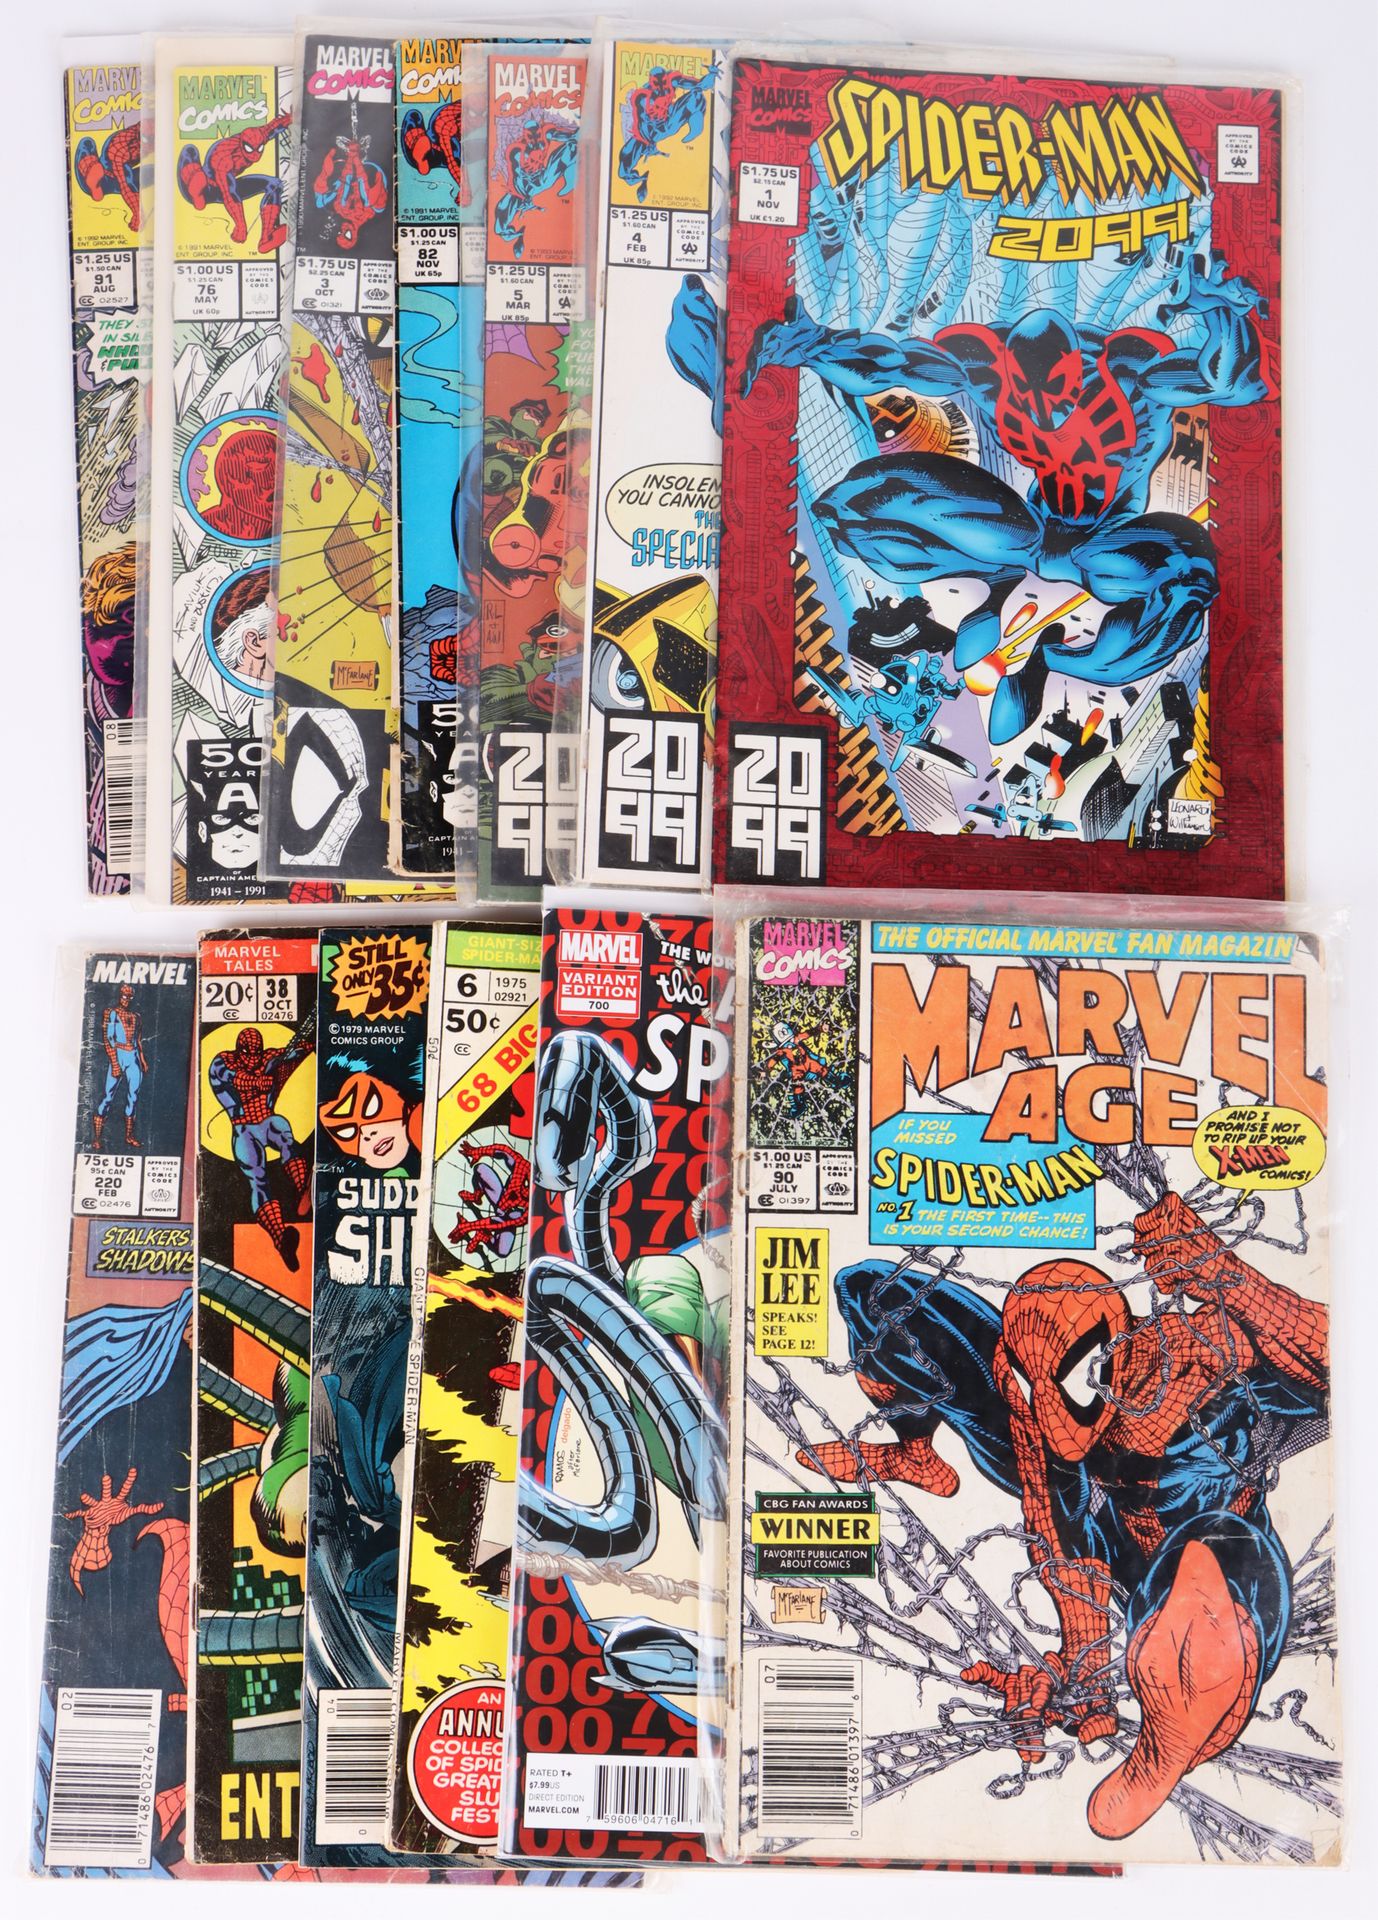 Fumetti Marvel da collezione dell'Uomo Ragno, tra cui Gi…